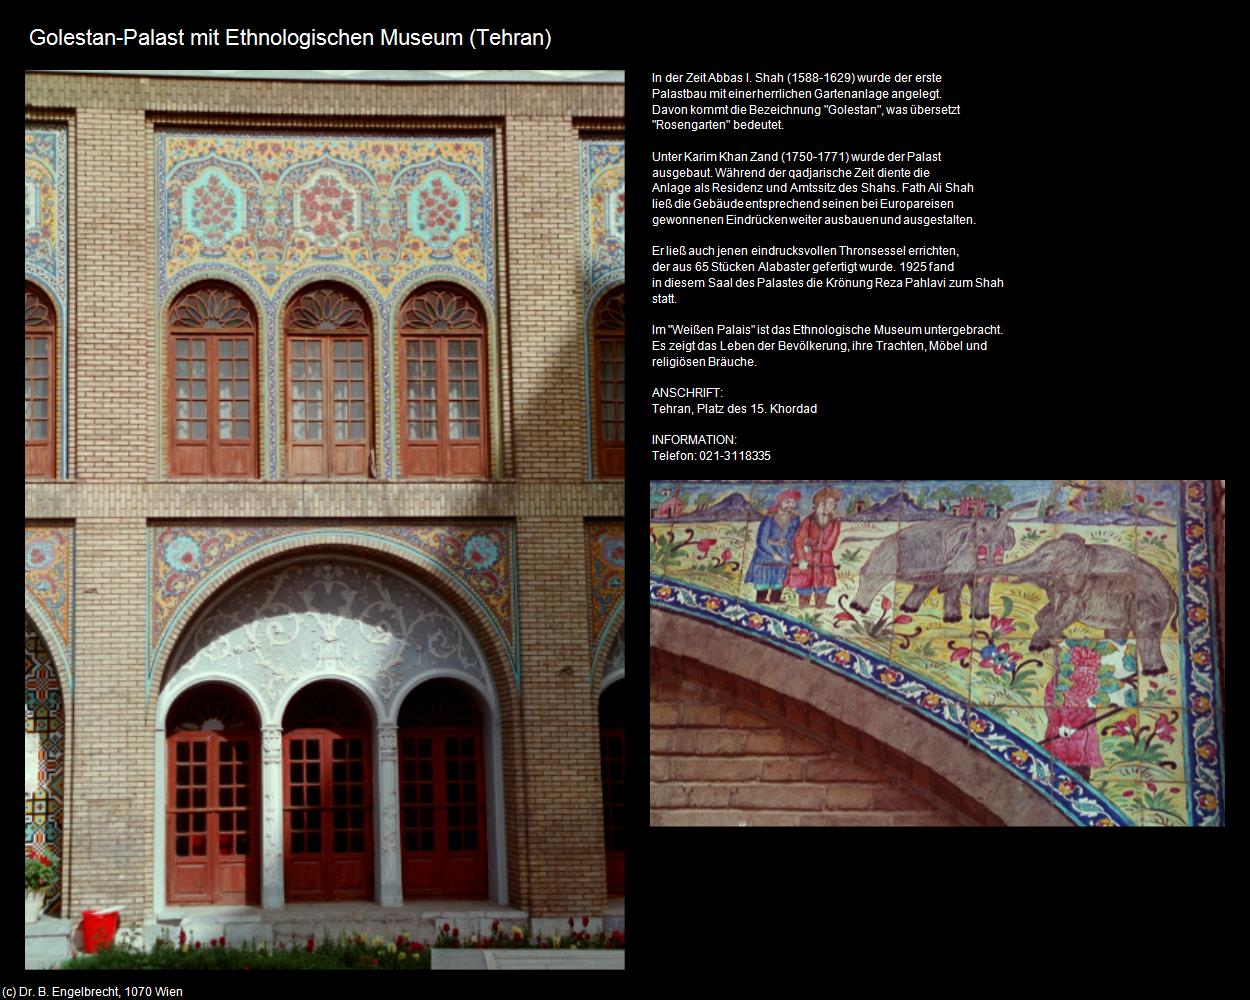 Golestan-Palast mit Ethnologischen Museum  (Tehran) in Iran